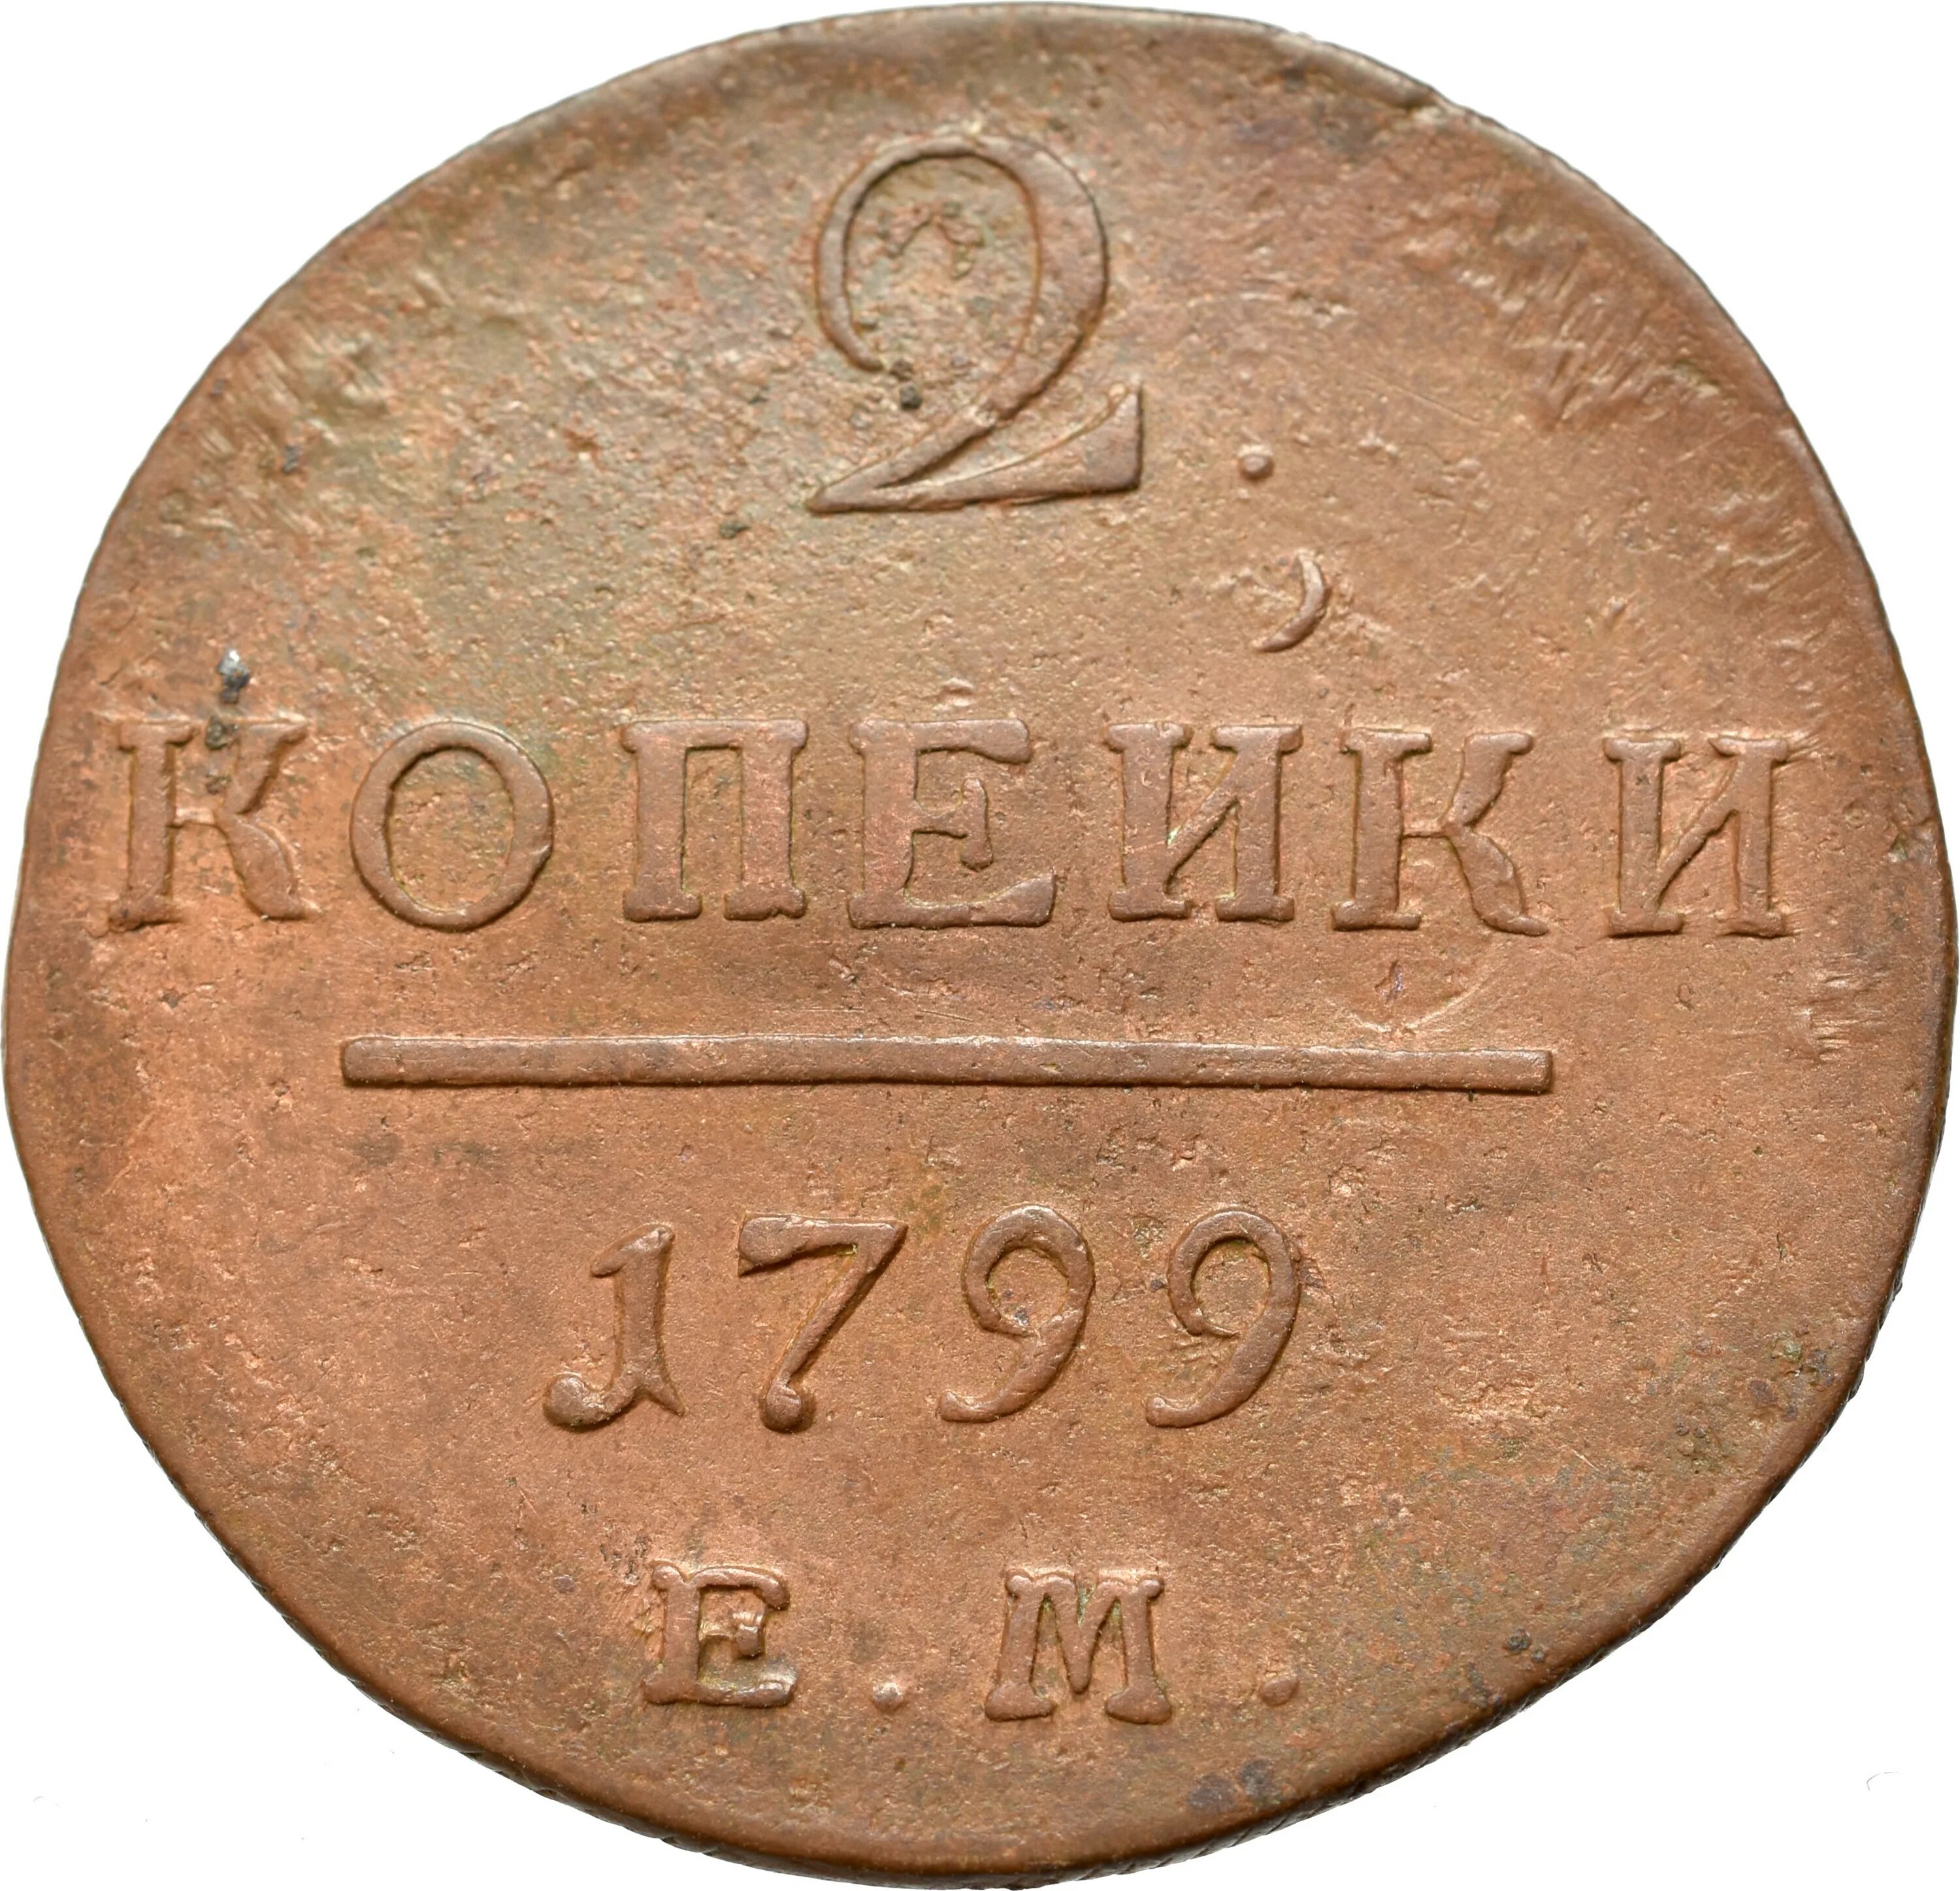 Копейка Петра 1 1798. Монета России 1 копейка 1798 года. Монеты 1800. Деньги 1800